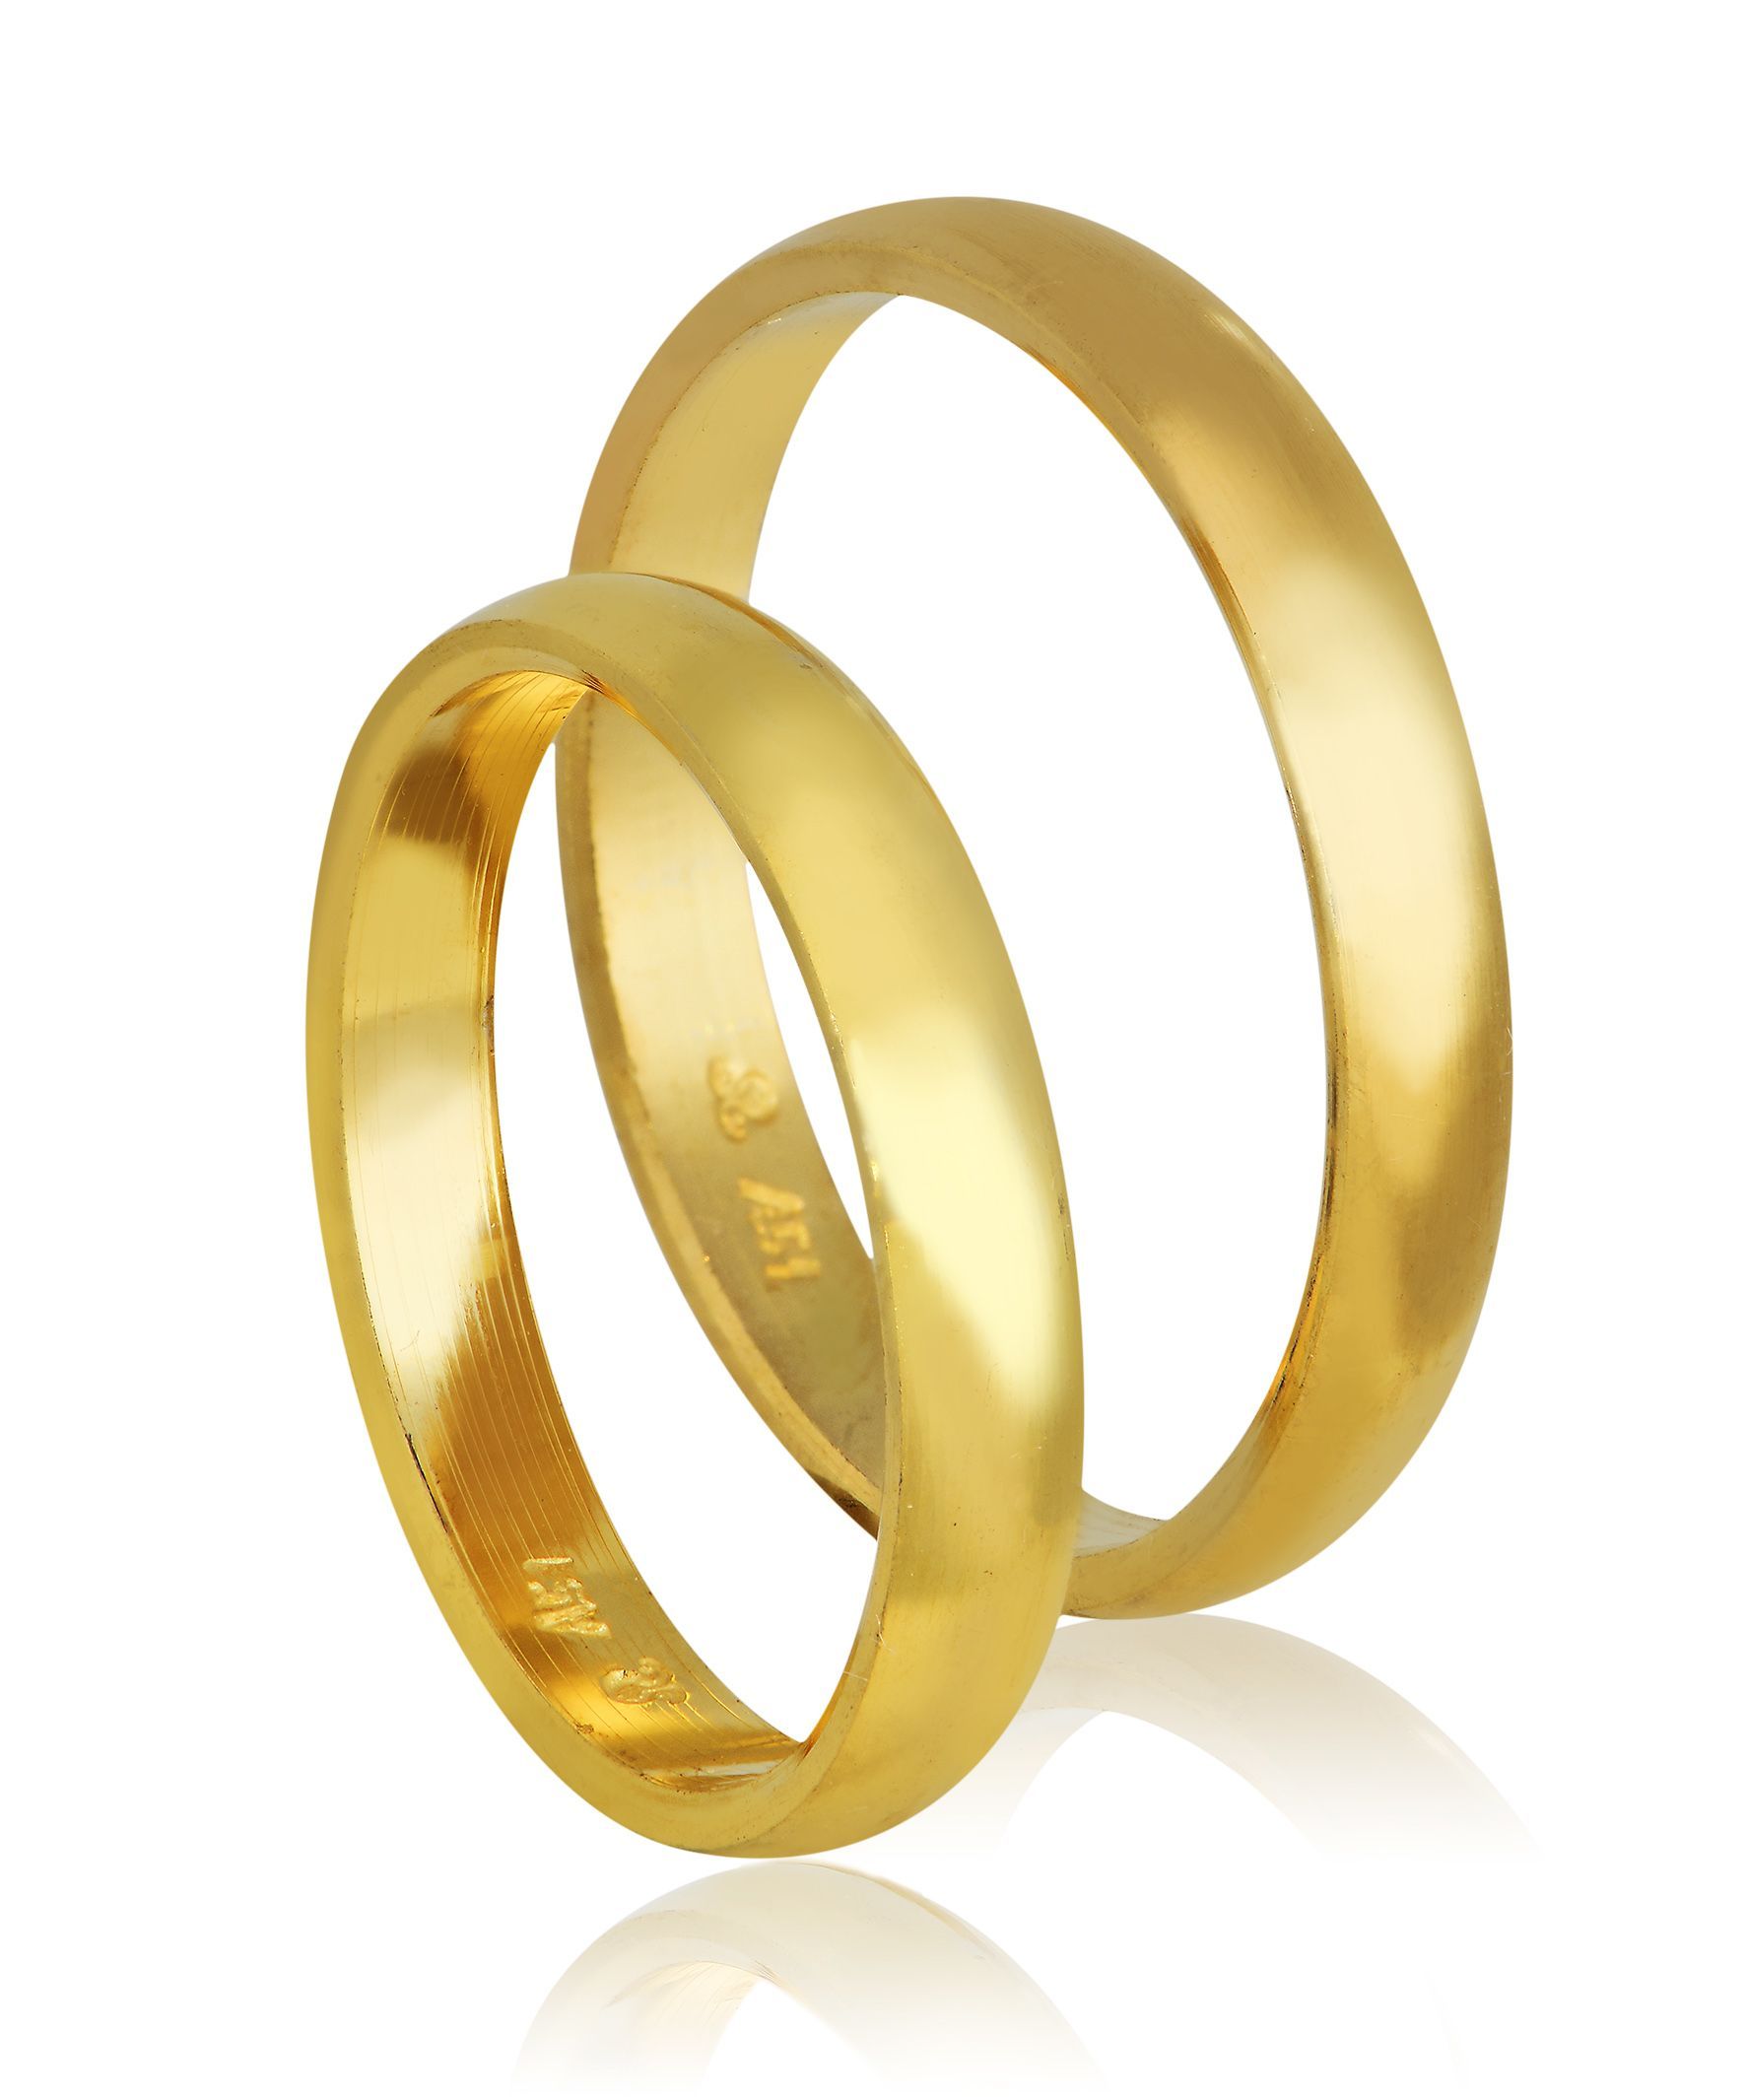 Golden wedding rings 3mm (code 412)